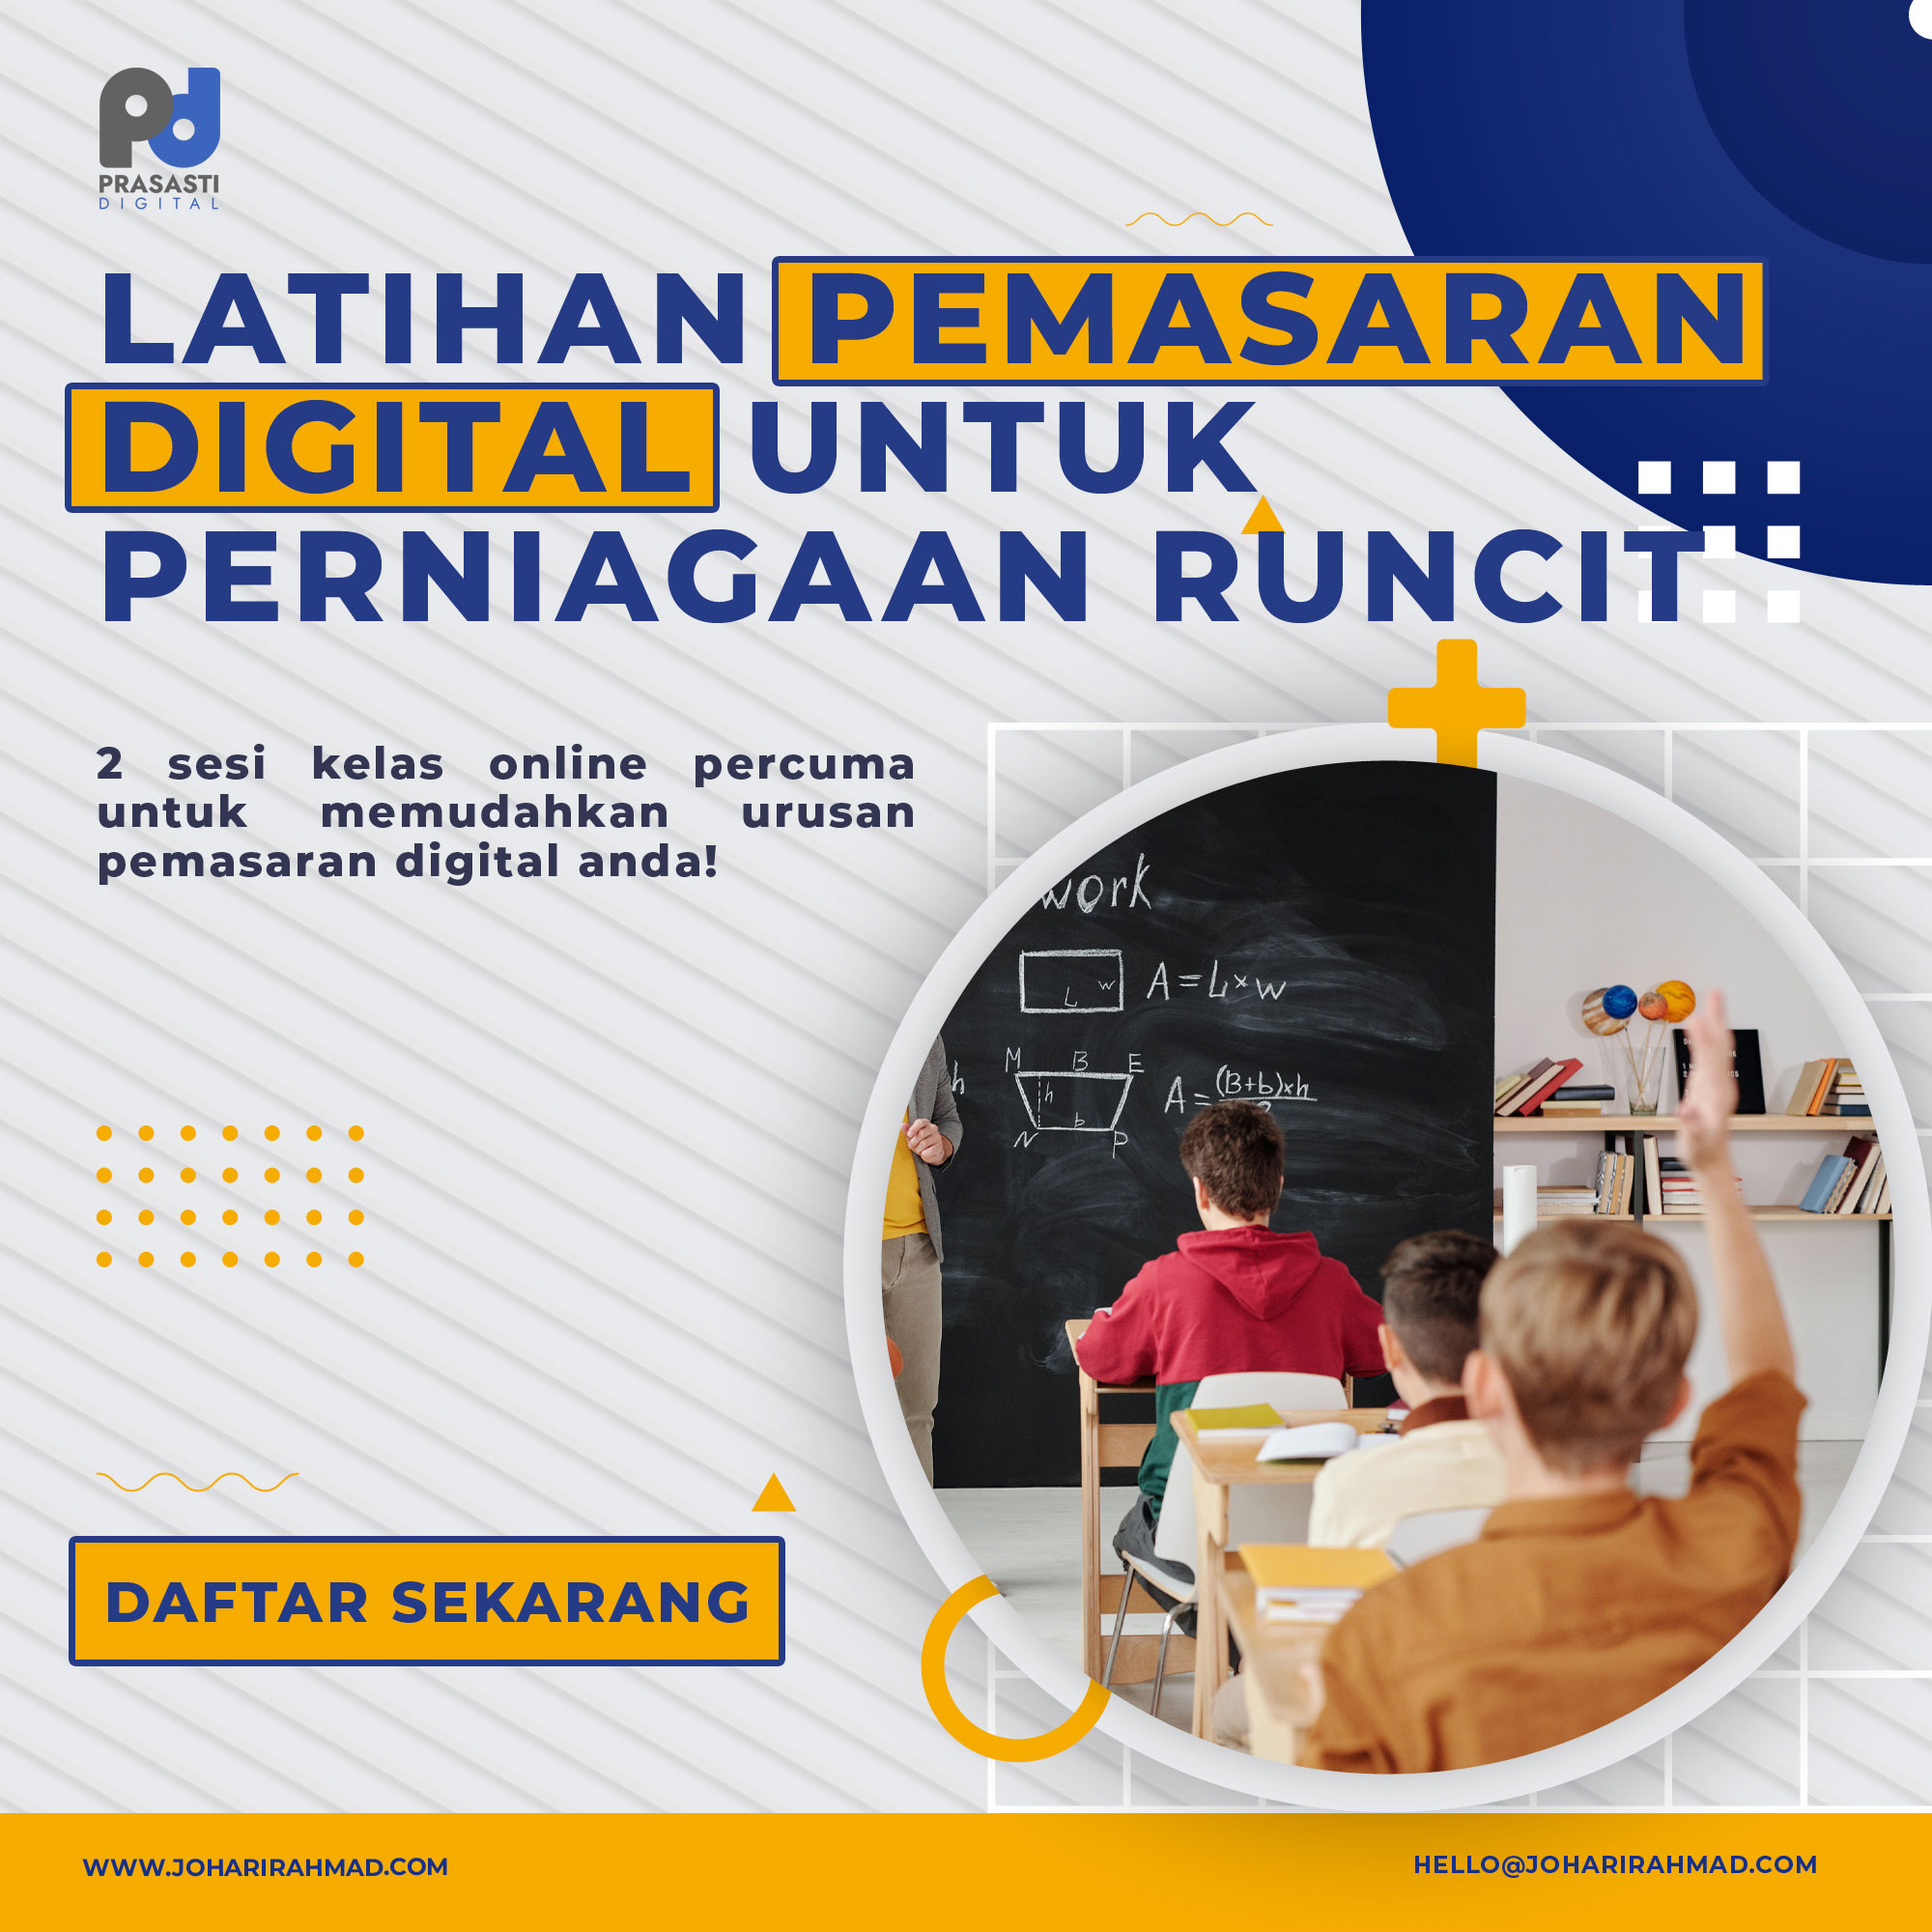 Latihan Pemasaran Digital untuk Perniagaan Runcit (Retail)